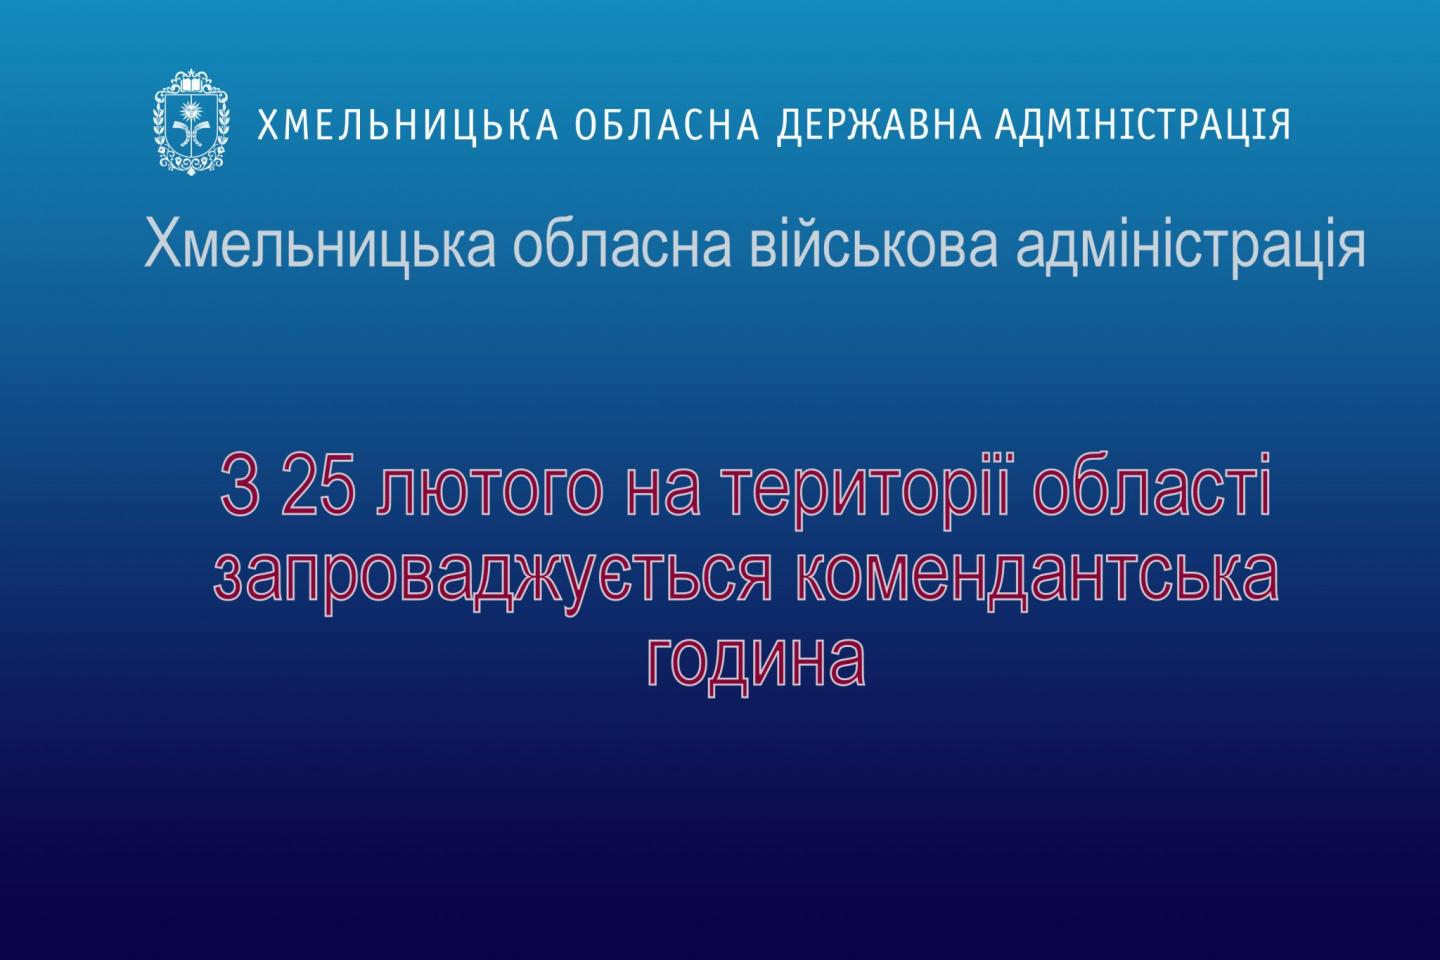 http://dunrada.gov.ua/uploadfile/archive_news/2022/02/25/2022-02-25_1397/images/images-74401.jpg